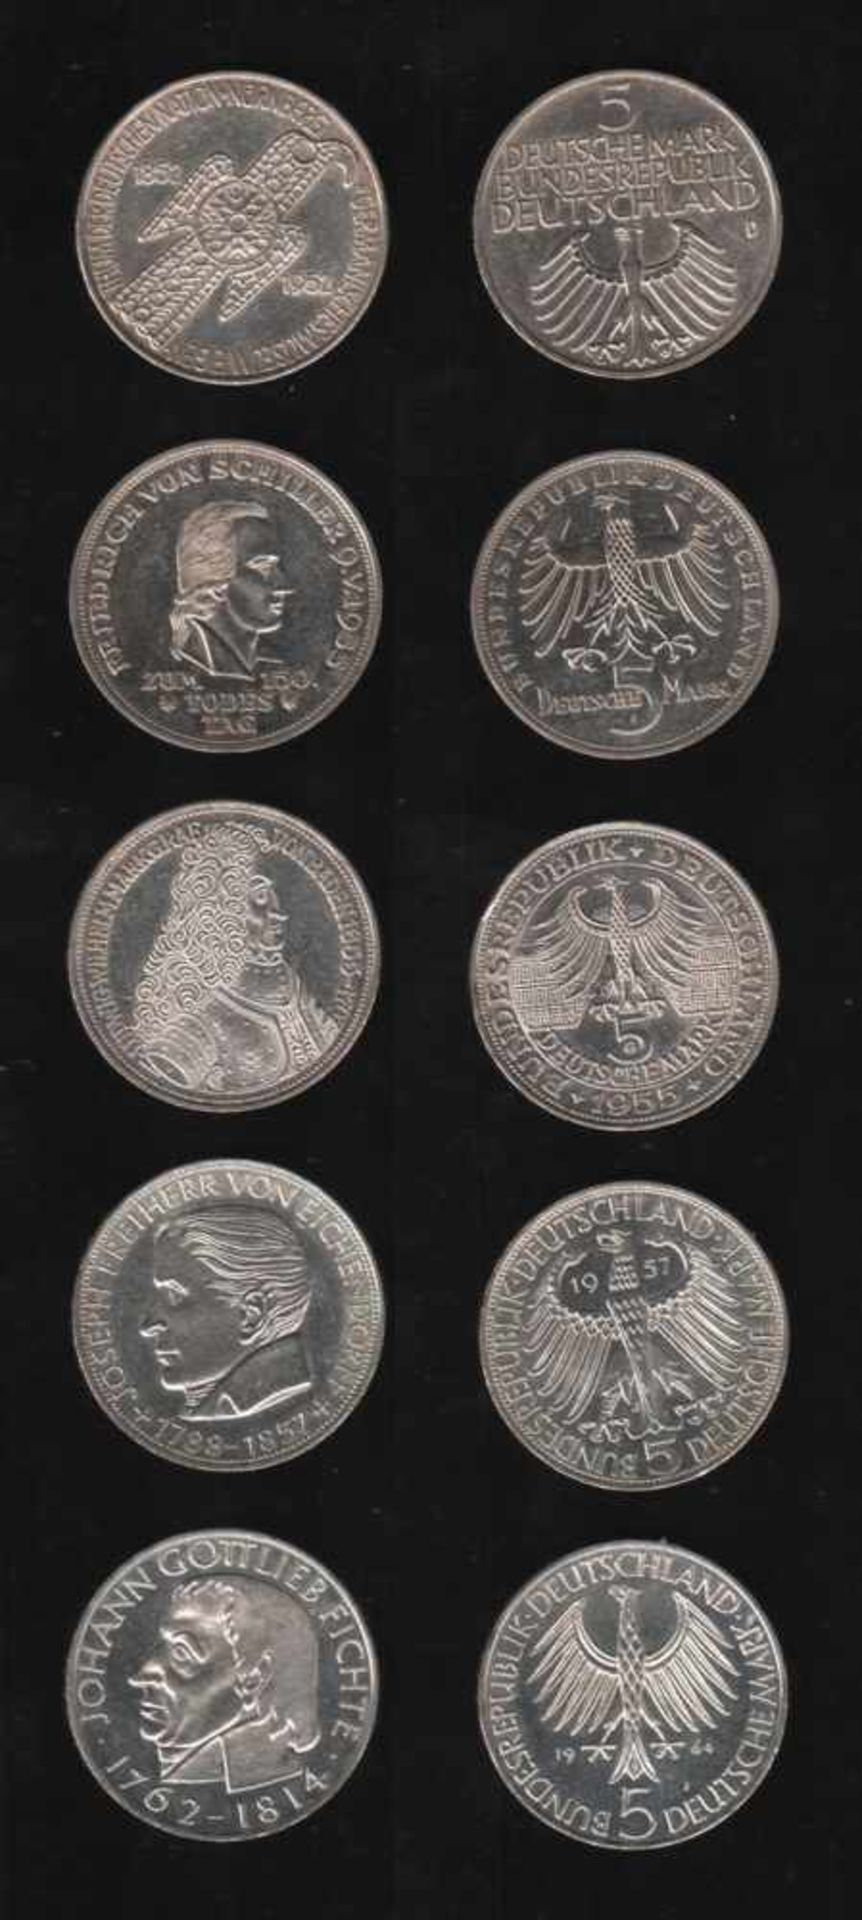 Deutschland. 5 Silbermünzen à 5 DM.Germanisches Museum, Friedrich von Schiller, Ludwig Wilhelm